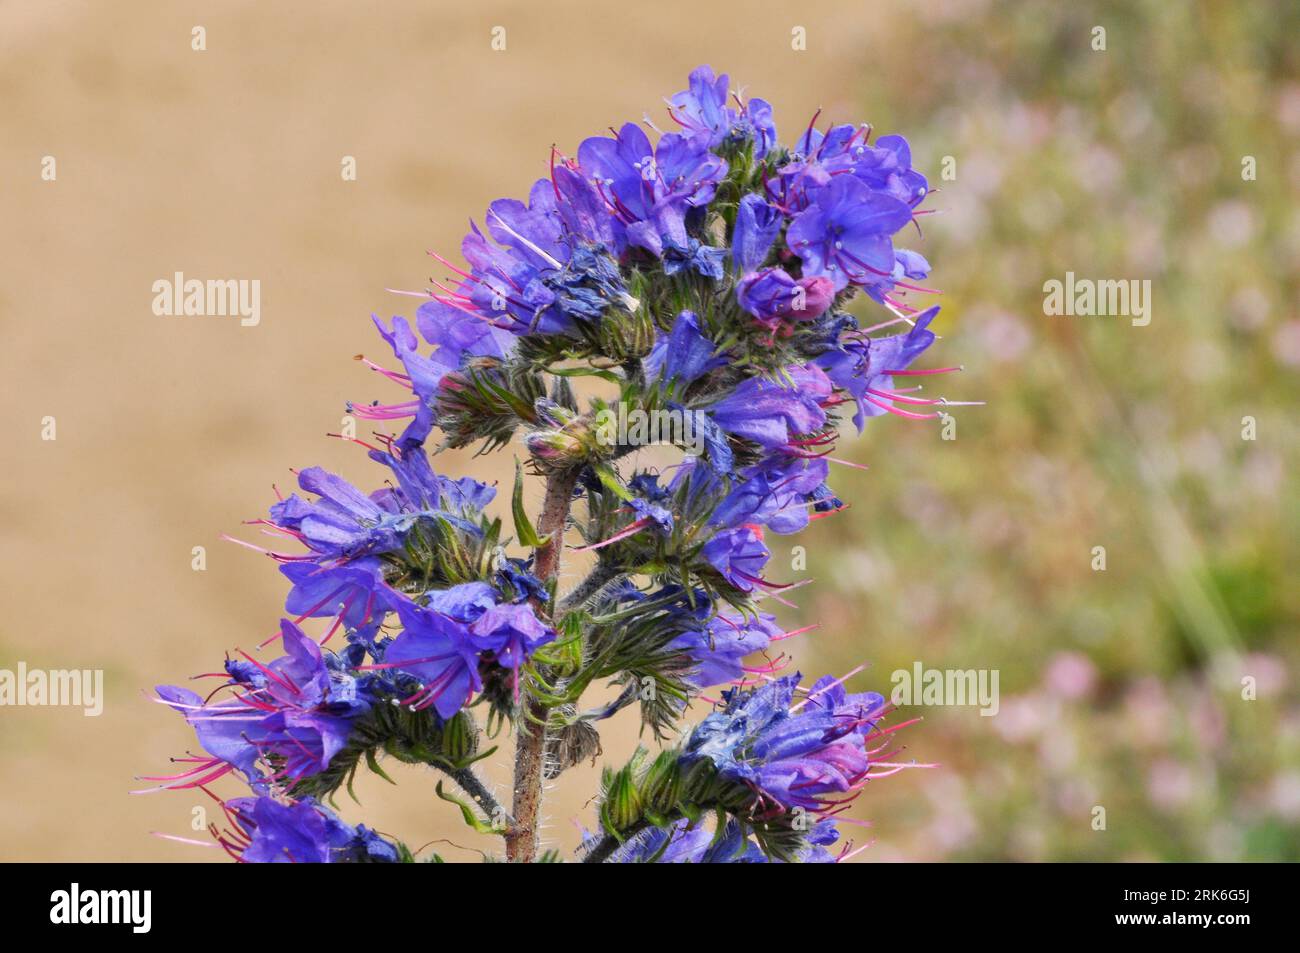 Vipera's-bugloss,' Echium vulgare'Upright, punte di fiori blu a forma di imbuto macchiate su praterie di gesso, dune di sabbia, scogliere, sponde e grovigli disturbati Foto Stock